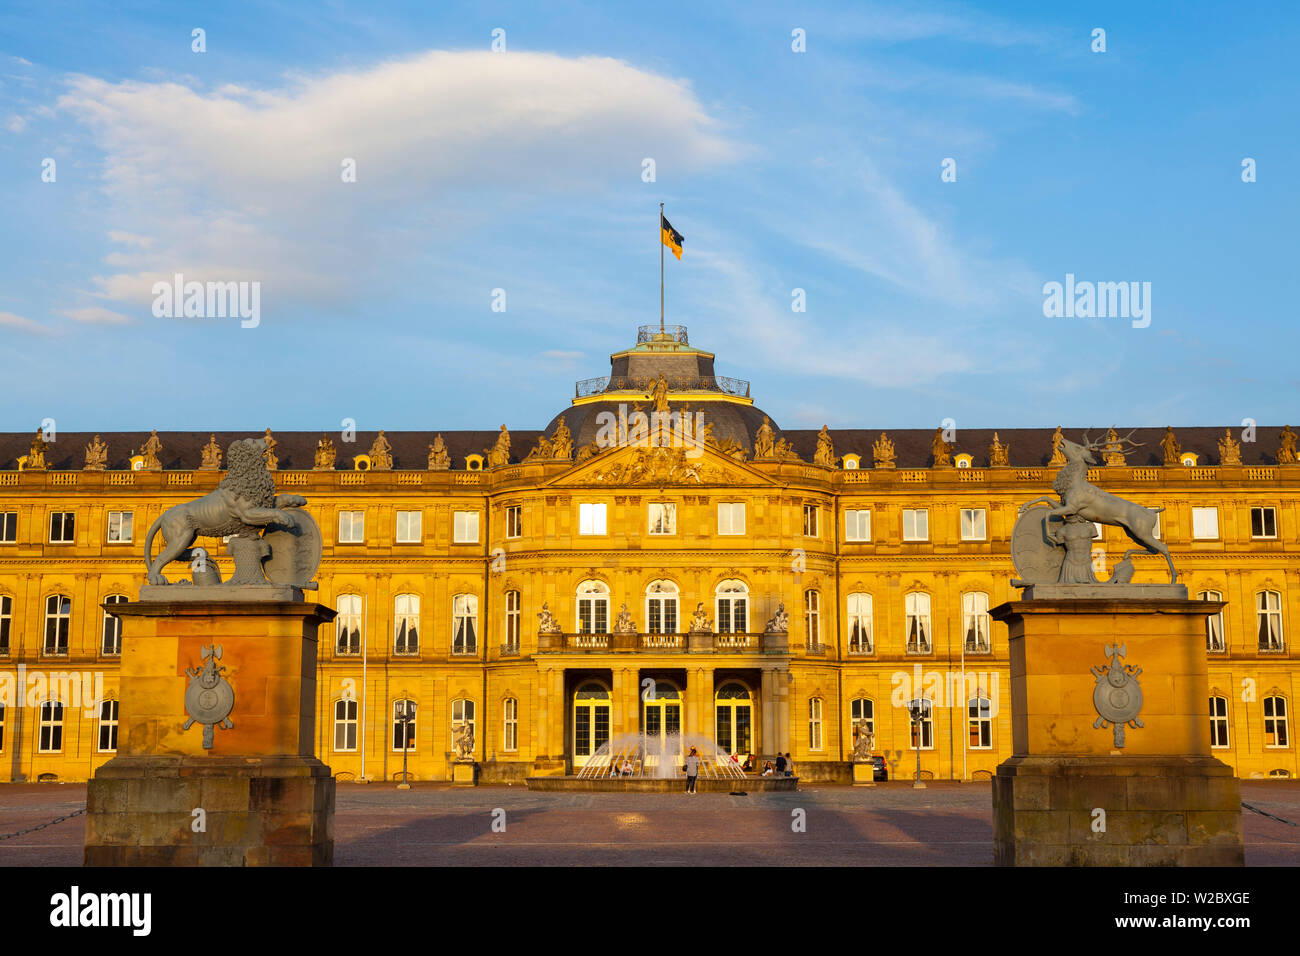 Neues Schloss (castillo nuevo), Stuttgart, Baden-Wurtemberg, Alemania Foto de stock